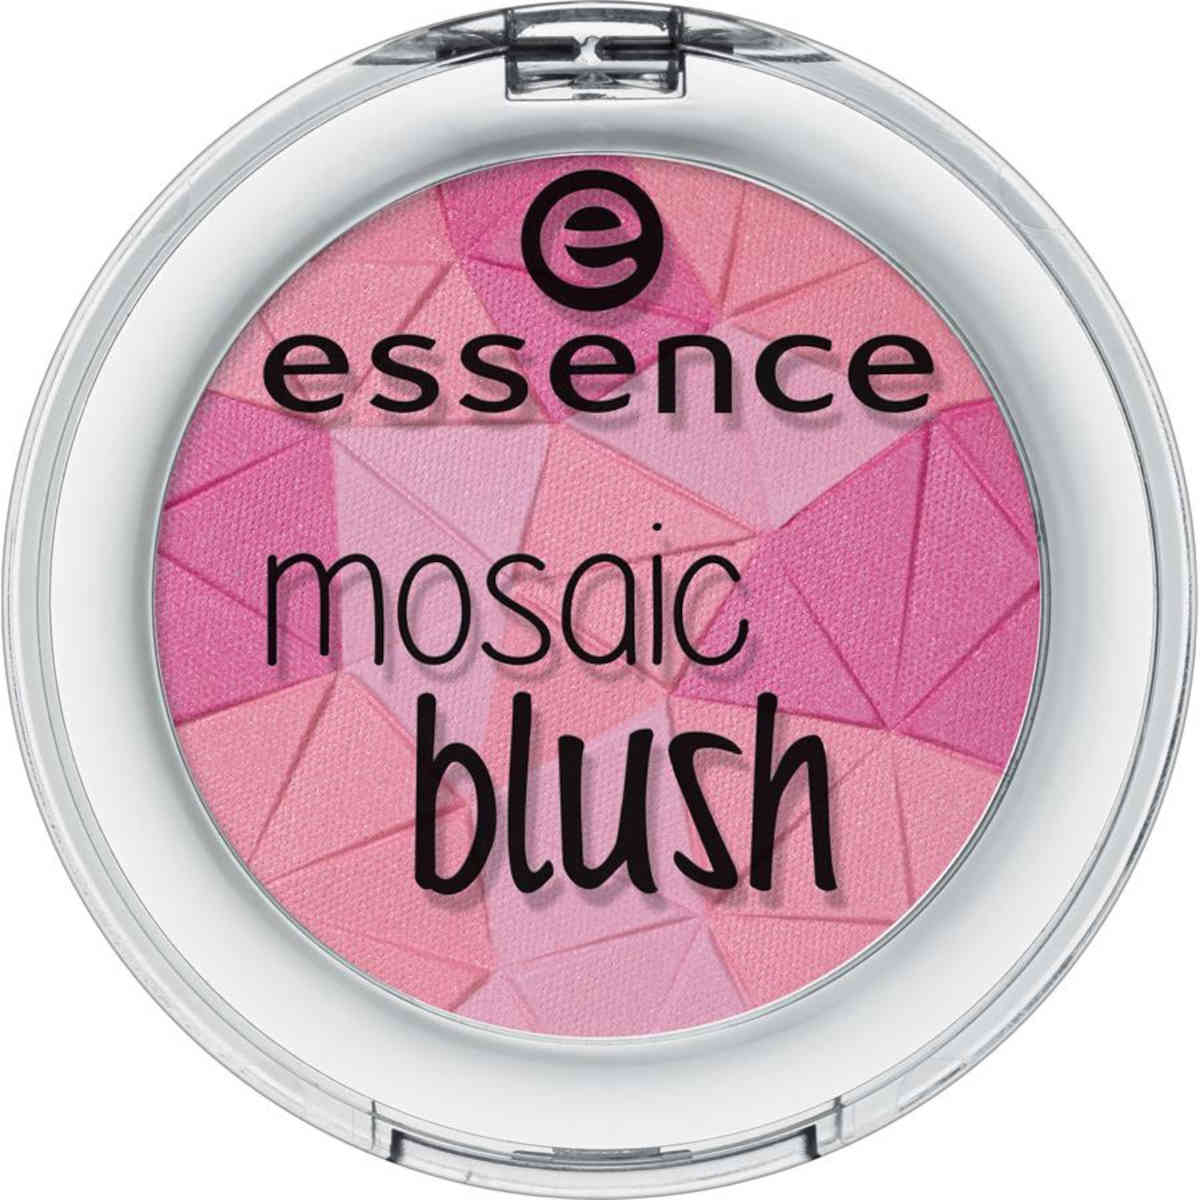 Essence blush Mosaic